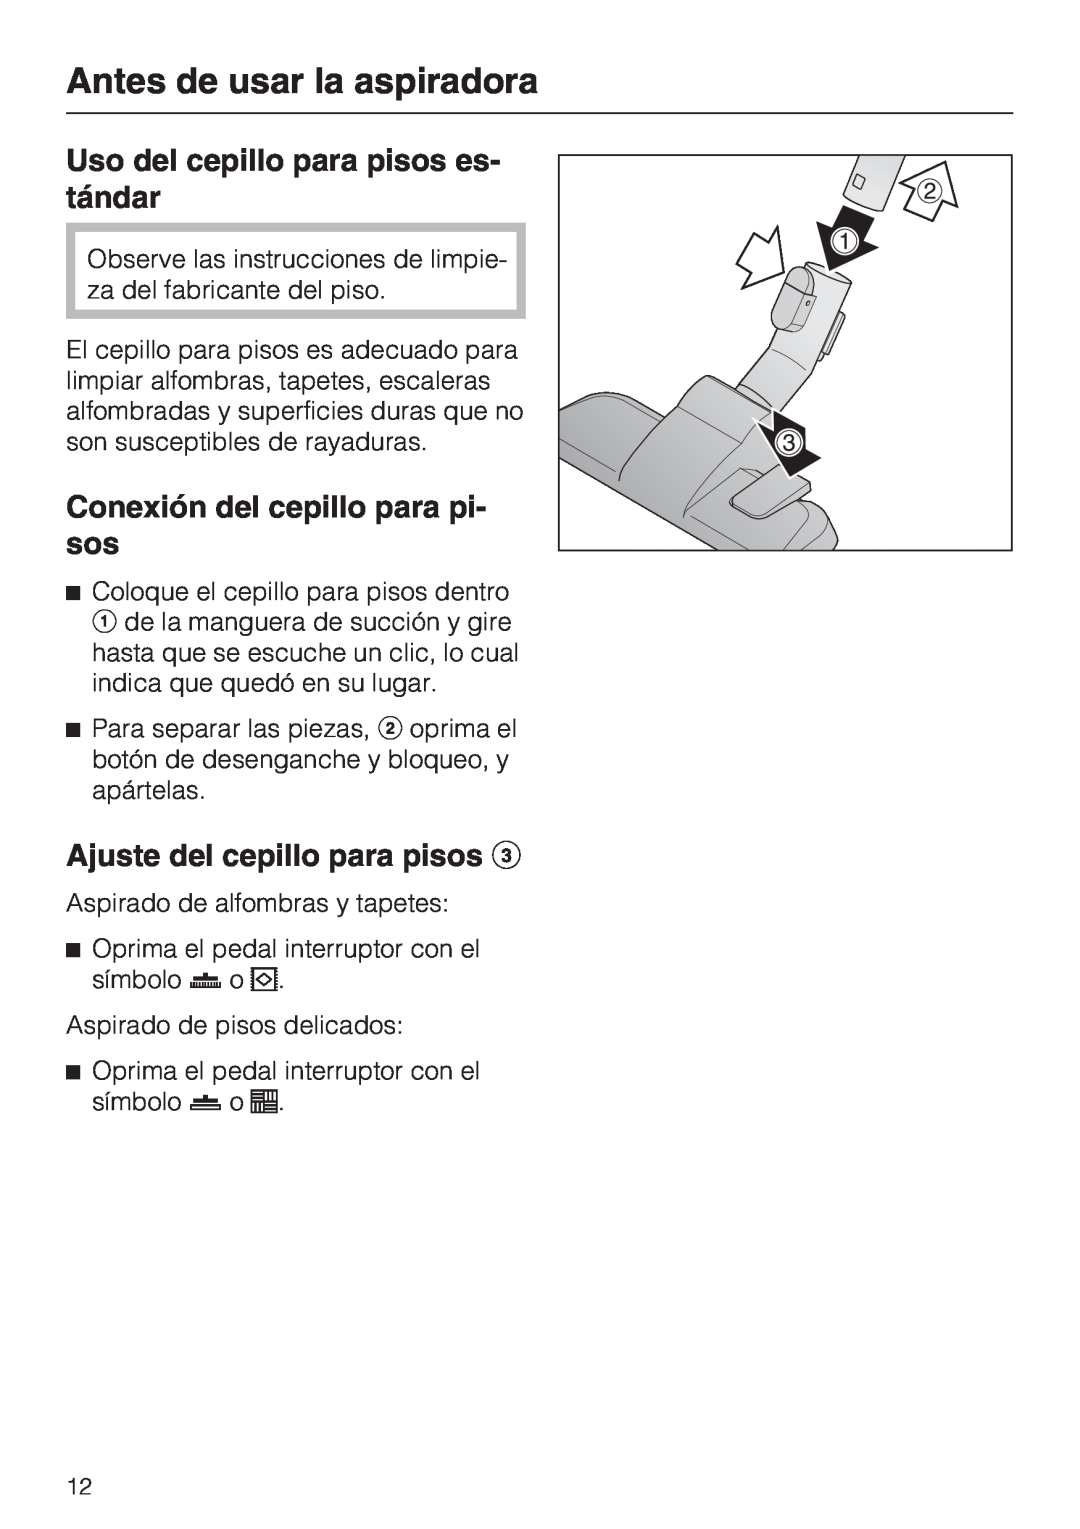 Miele S 2001 manual Uso del cepillo para pisos es- tándar, Conexión del cepillo para pi- sos, Ajuste del cepillo para pisos 